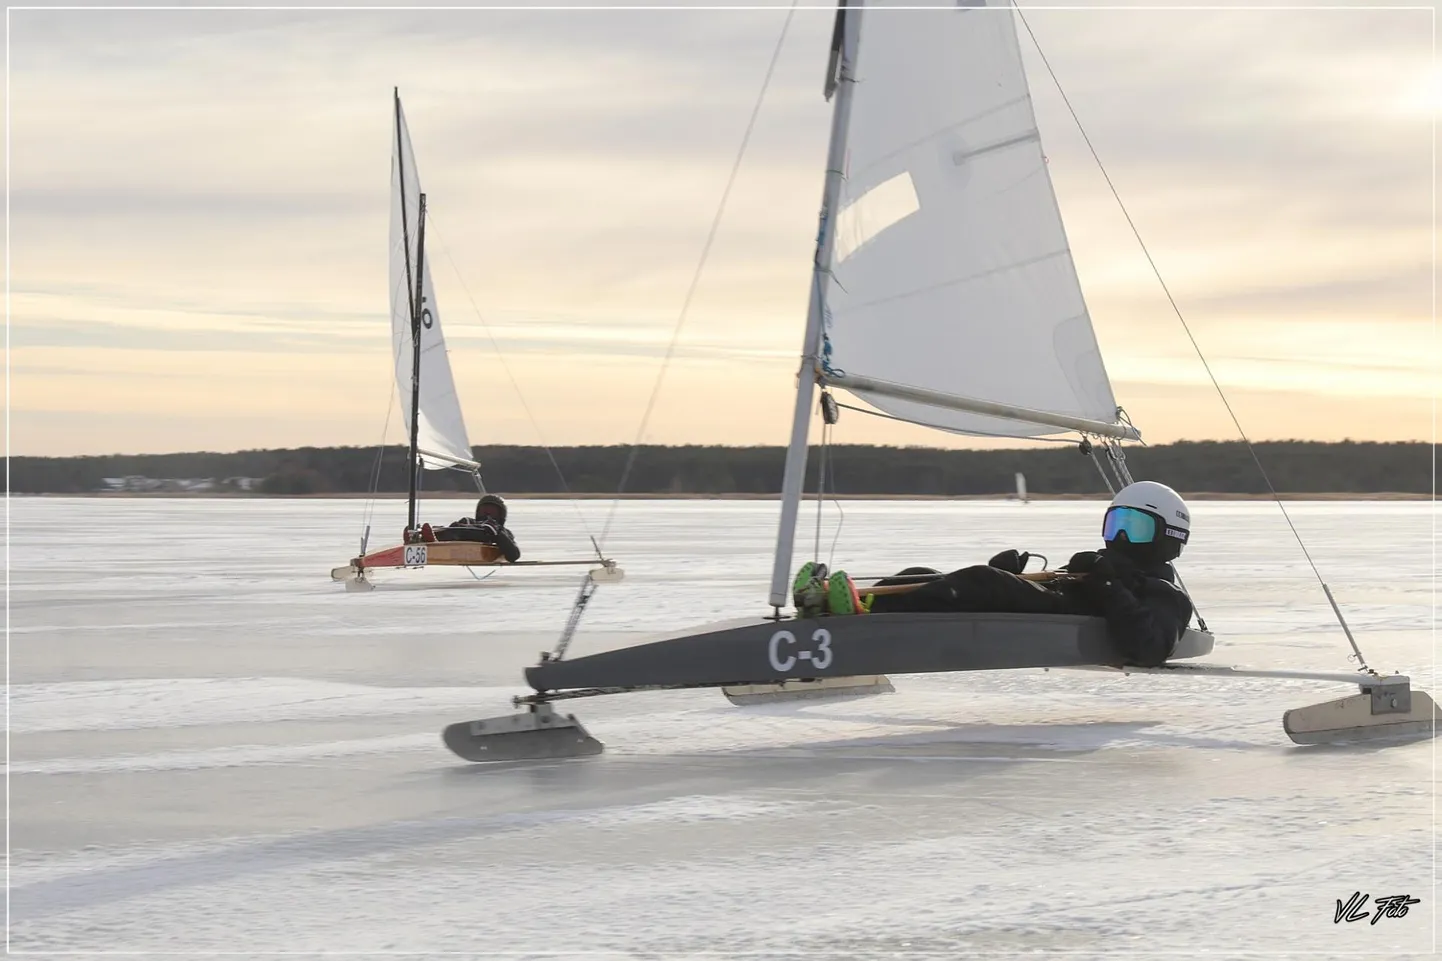 Ice Optimisti taltsutav Pärnu jahtklubi purjespordikooli kasvandik Aron Poolma nautis Saaremaal regativõitu.